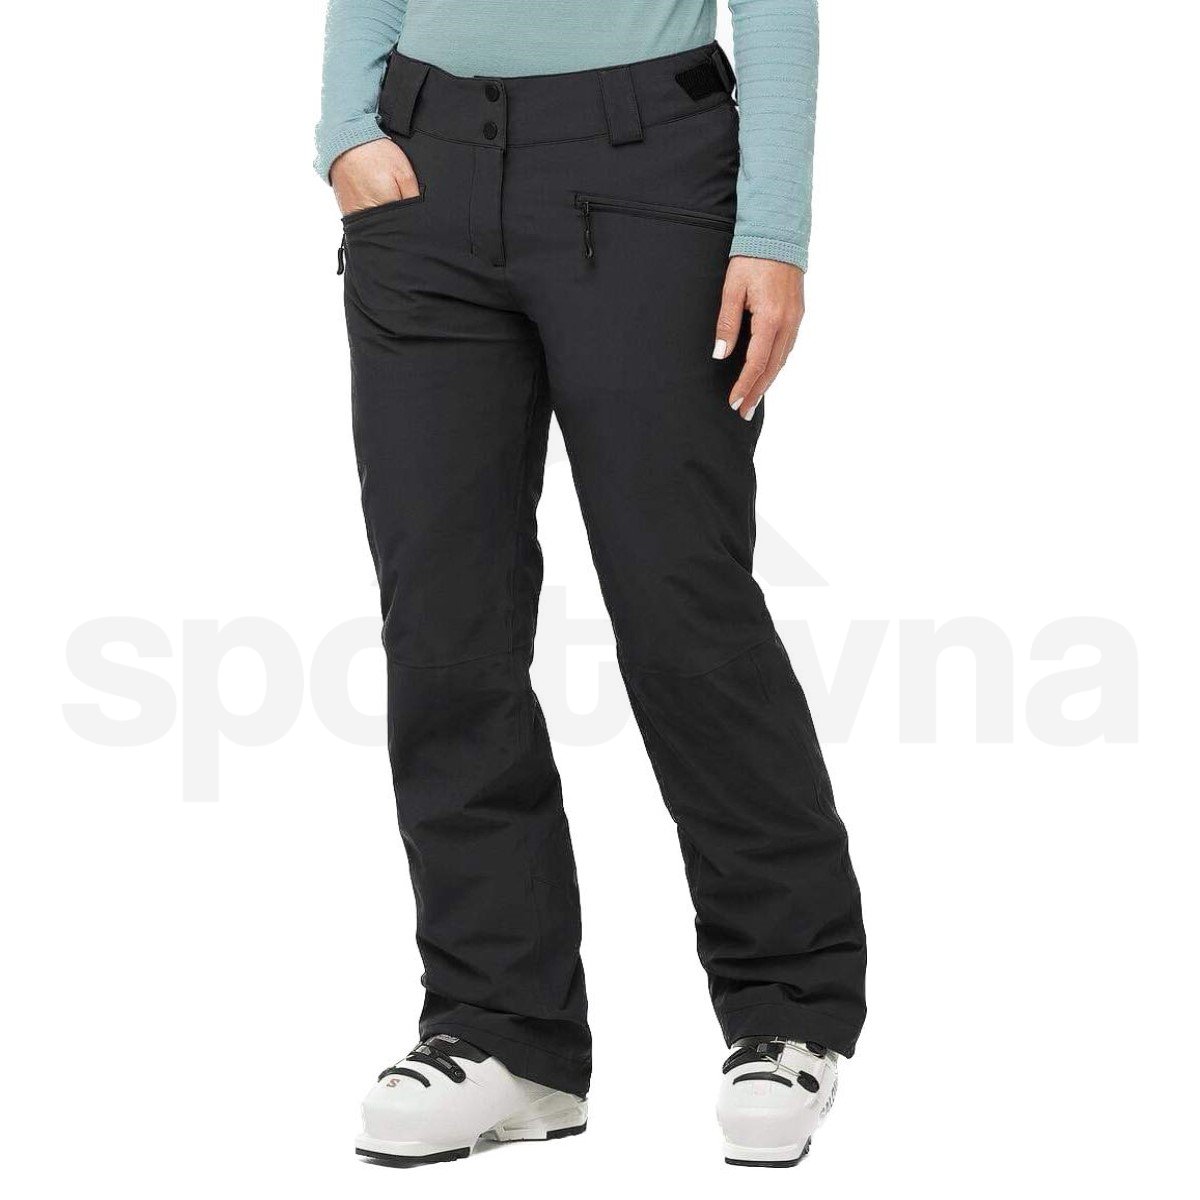 Kalhoty Salomon Edge Pant W - černá (prodloužená délka)